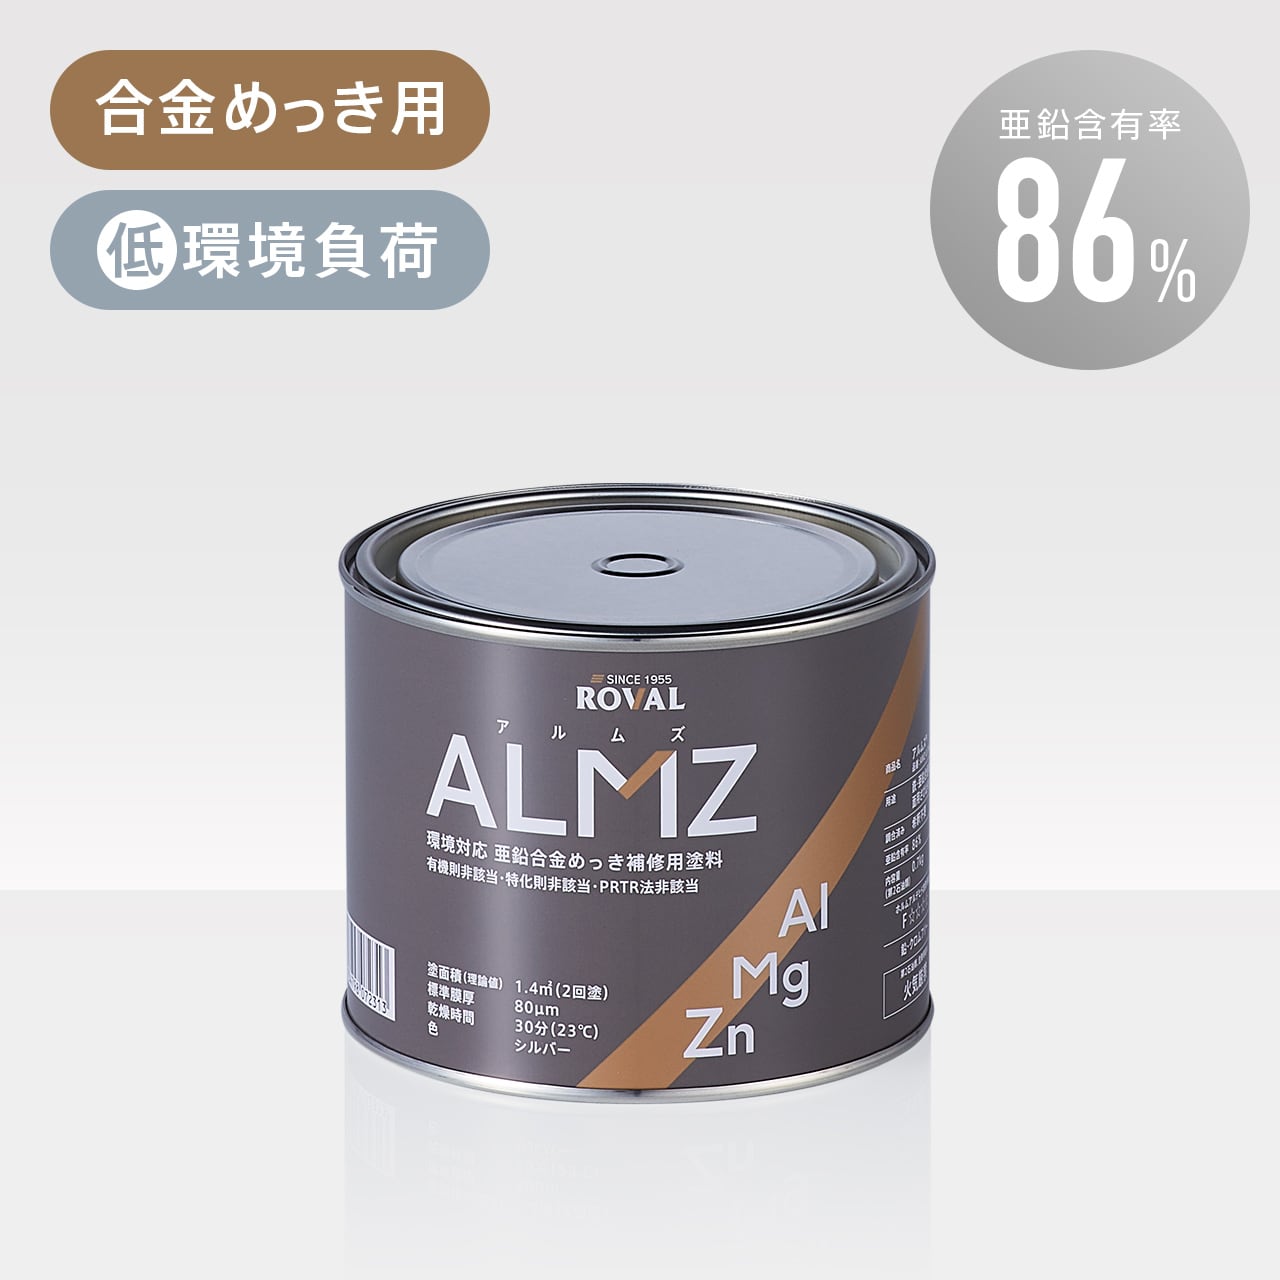 ALMZ（アルムズ） 0.7kg缶 ROVAL DIRECT SHOP